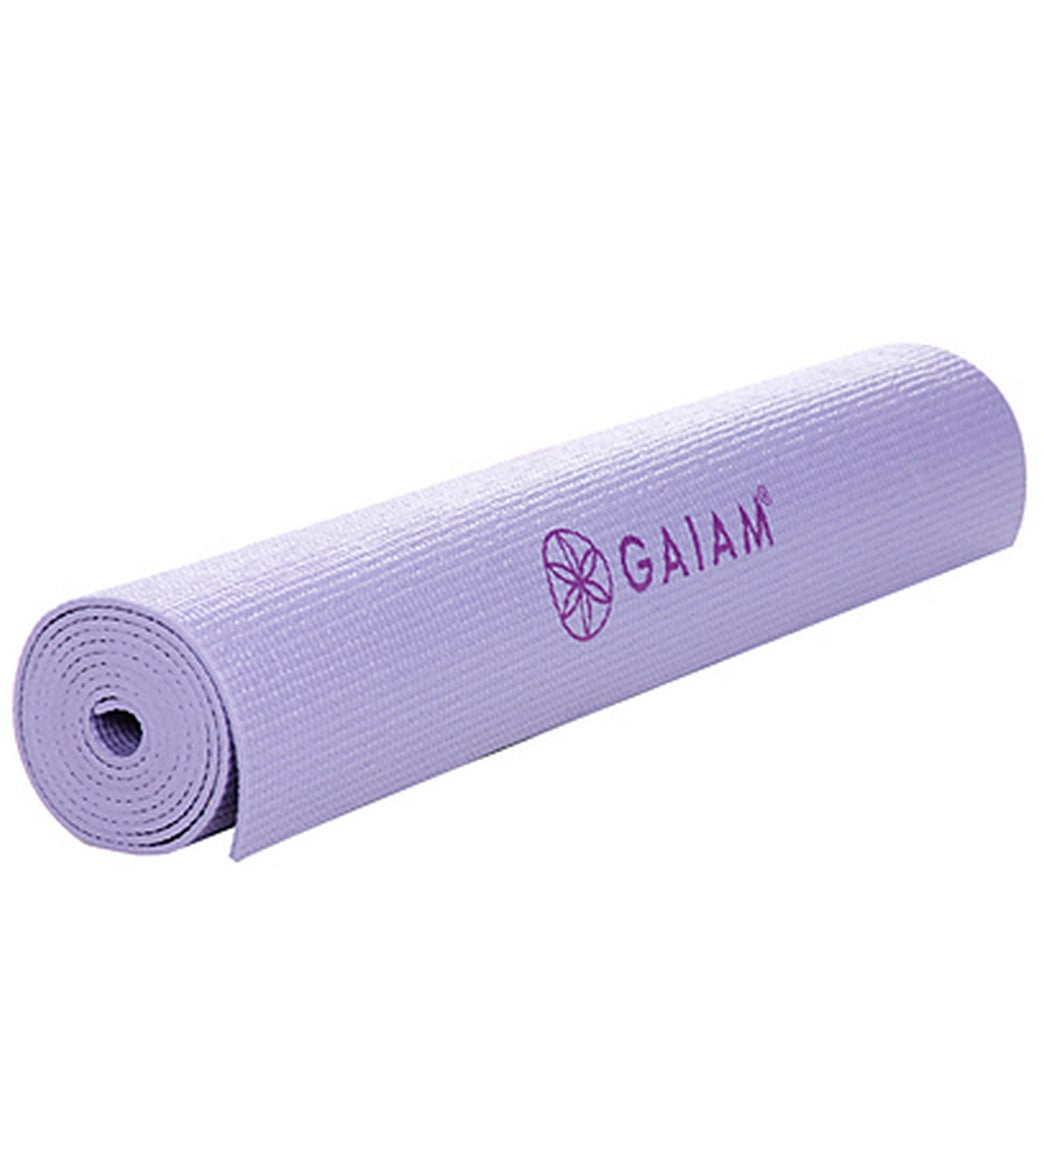 Gaiam Premium Metallic Medallion Yoga Mat- Premium Yoga Mats